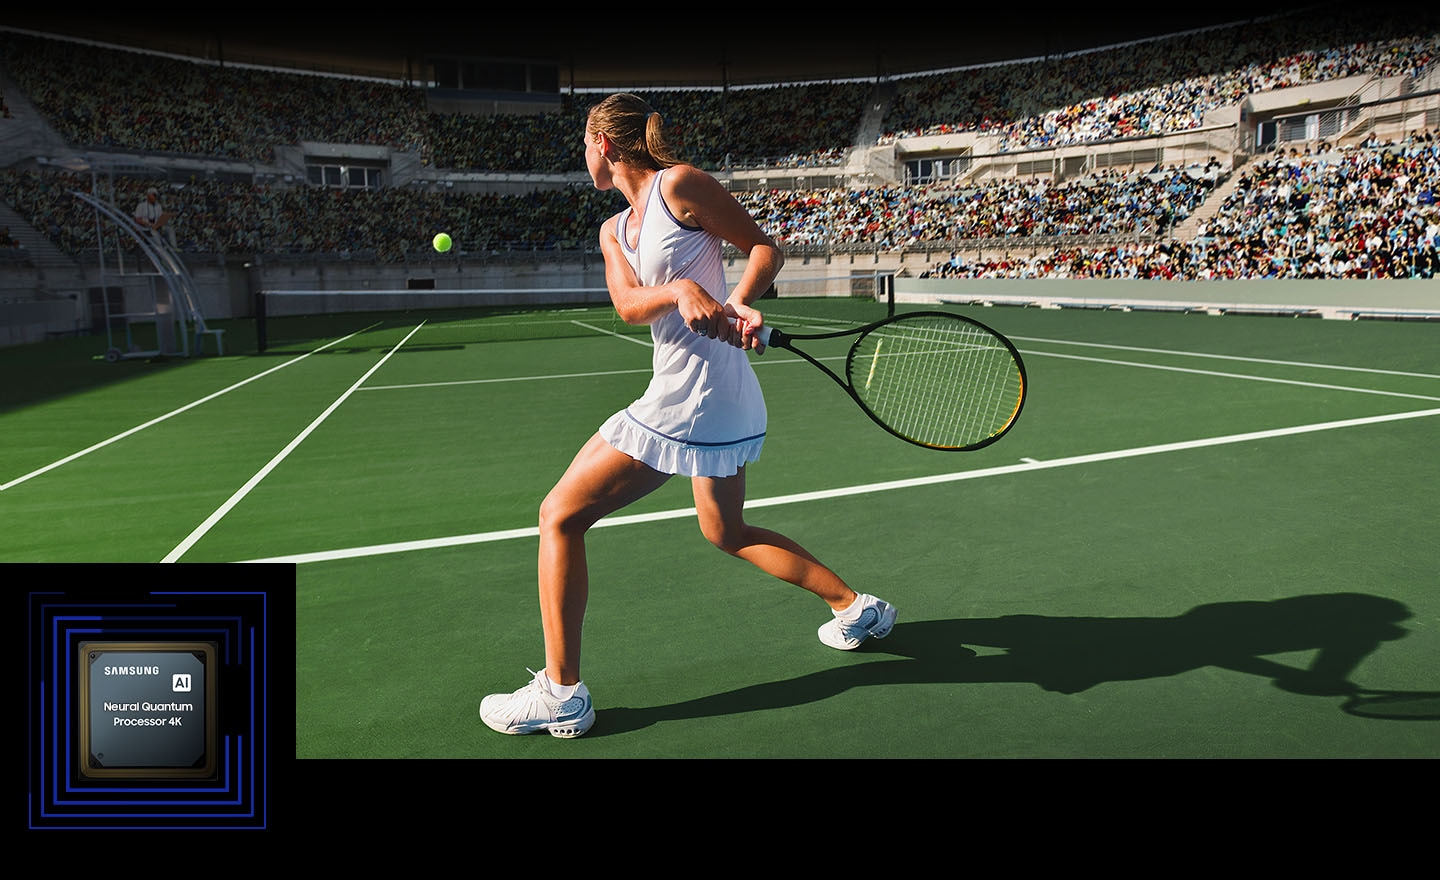 Bir kadın büyük bir kalabalığın önünde tenis oynuyor. Neural Quantum Processor 4K, ekrandaki birçok nesneyi işler ve tüm sahneyi geliştirir. Neural Quantum Processor 4K, sol alt köşede sergileniyor.